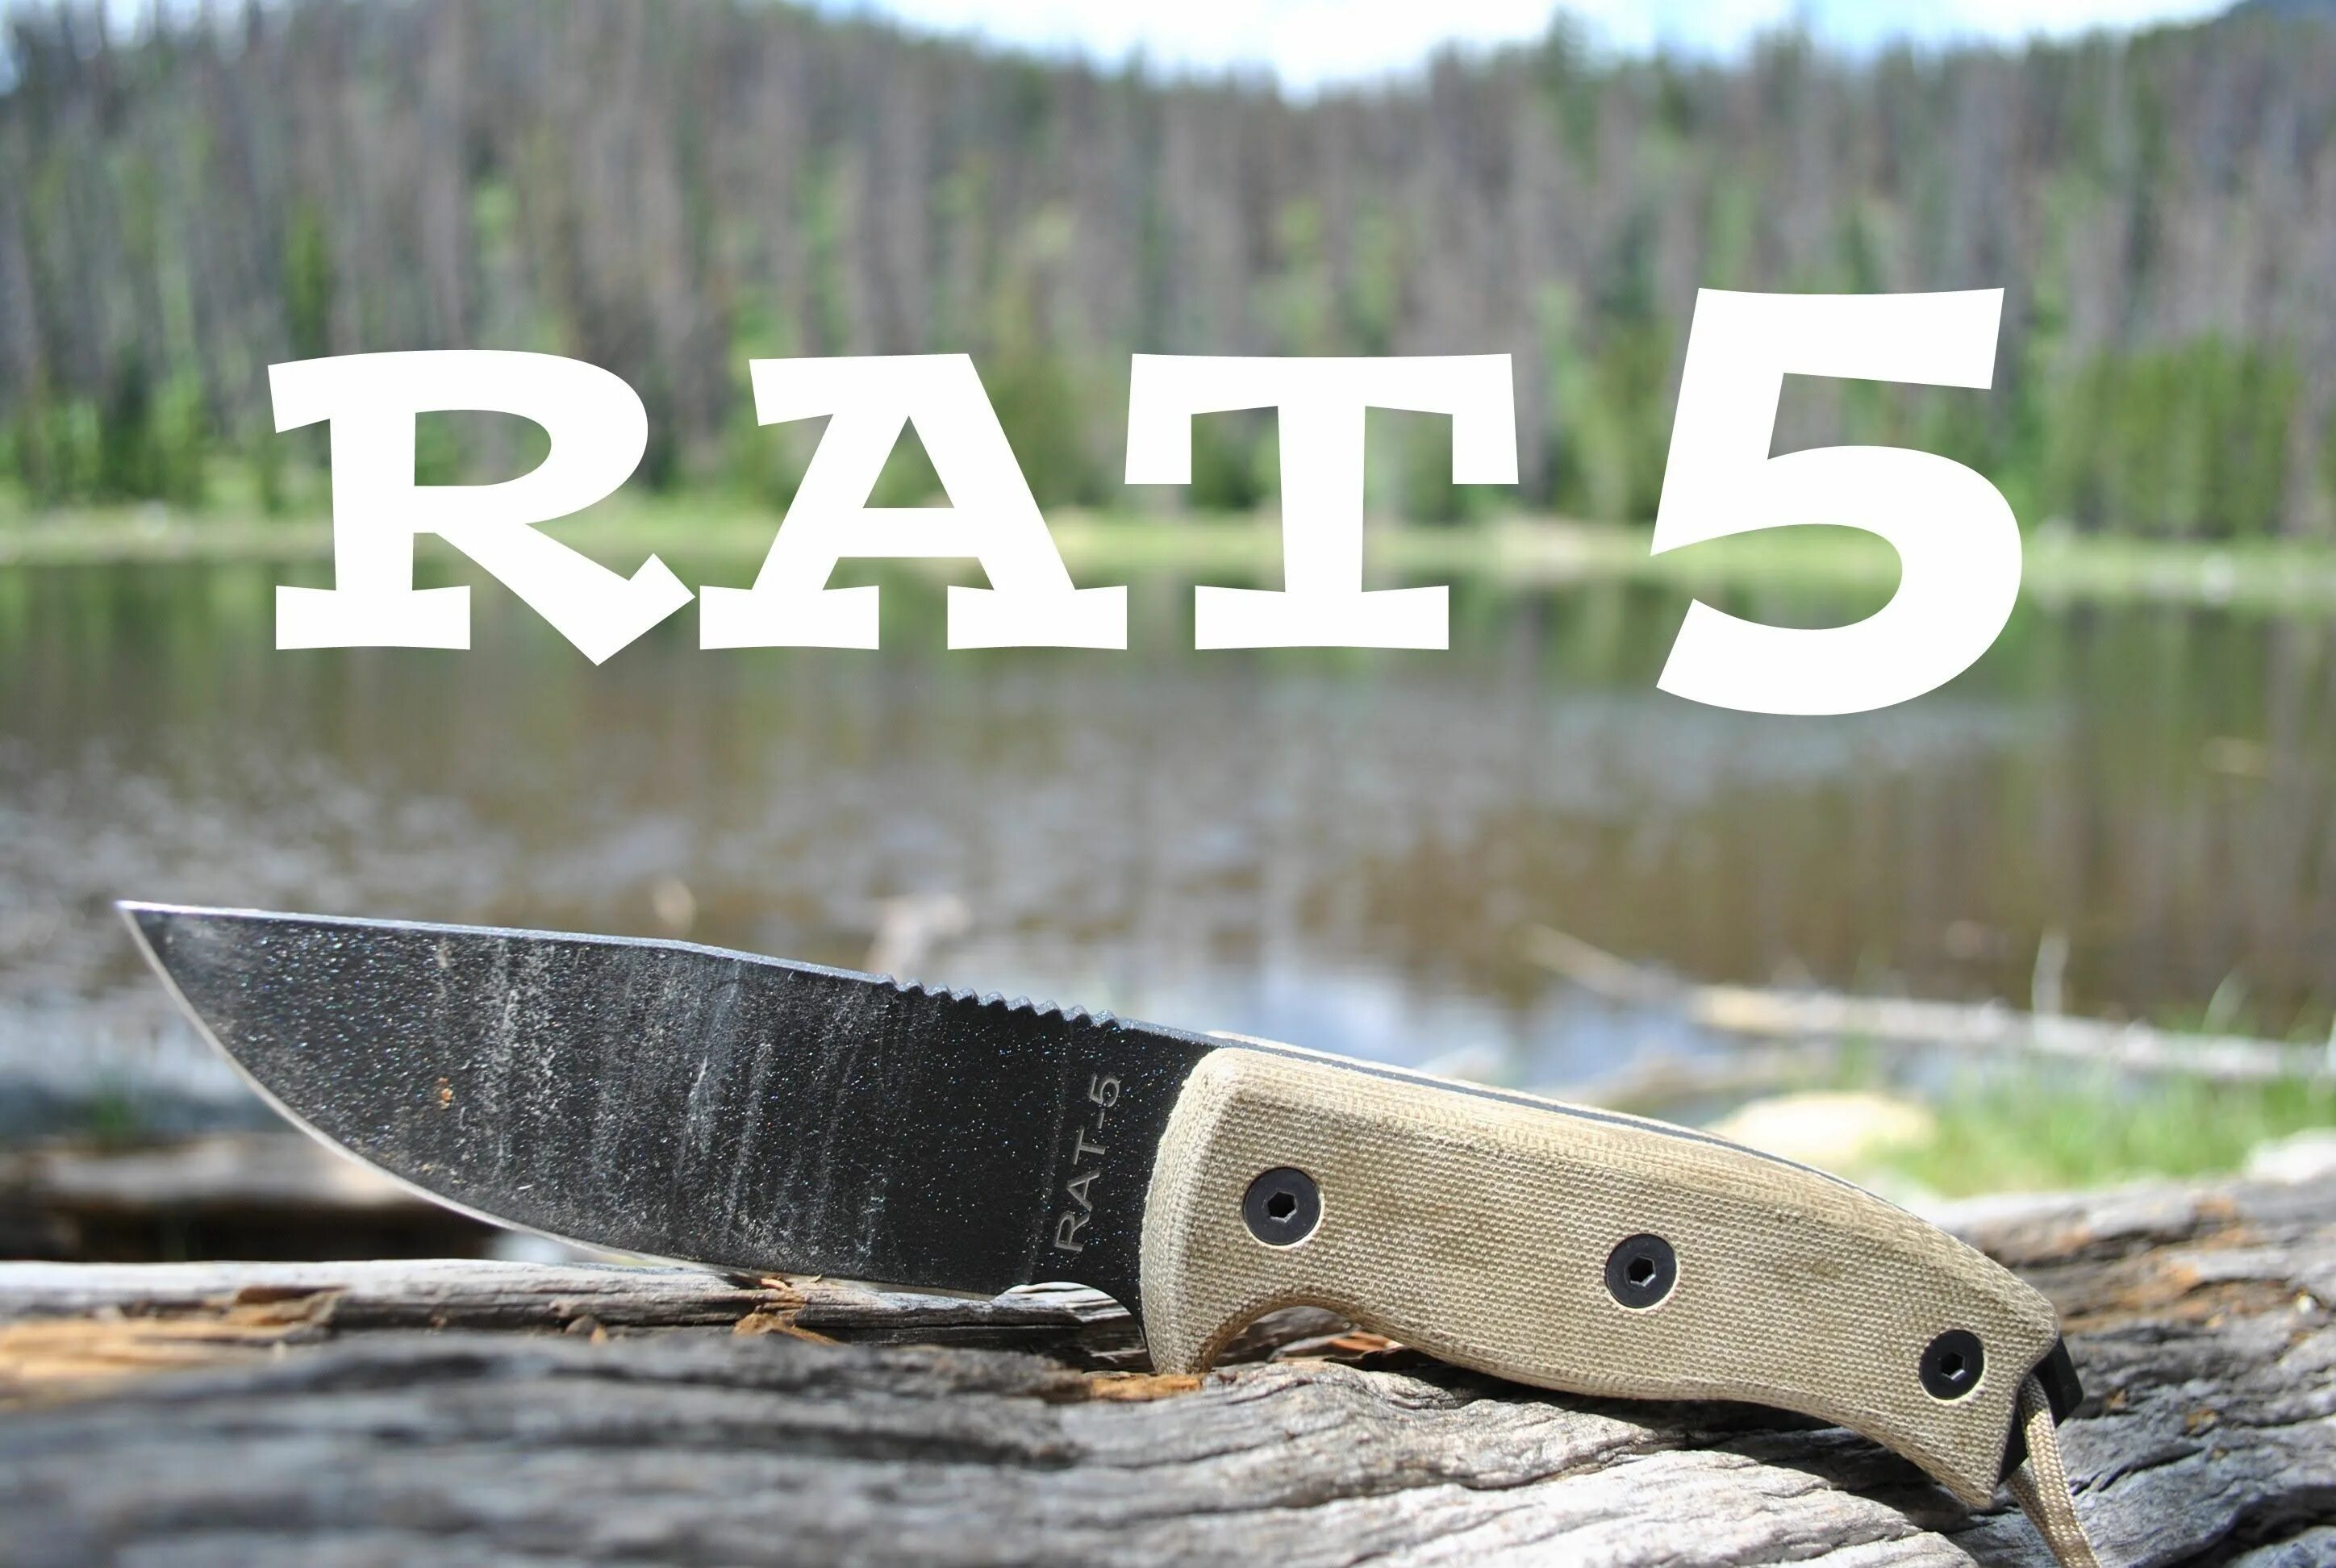 Рата 5. Rat 5 нож Онтарио. Rat 7 нож. Нож рат 7 Онтарио. Ontario rat 3 Comparison.